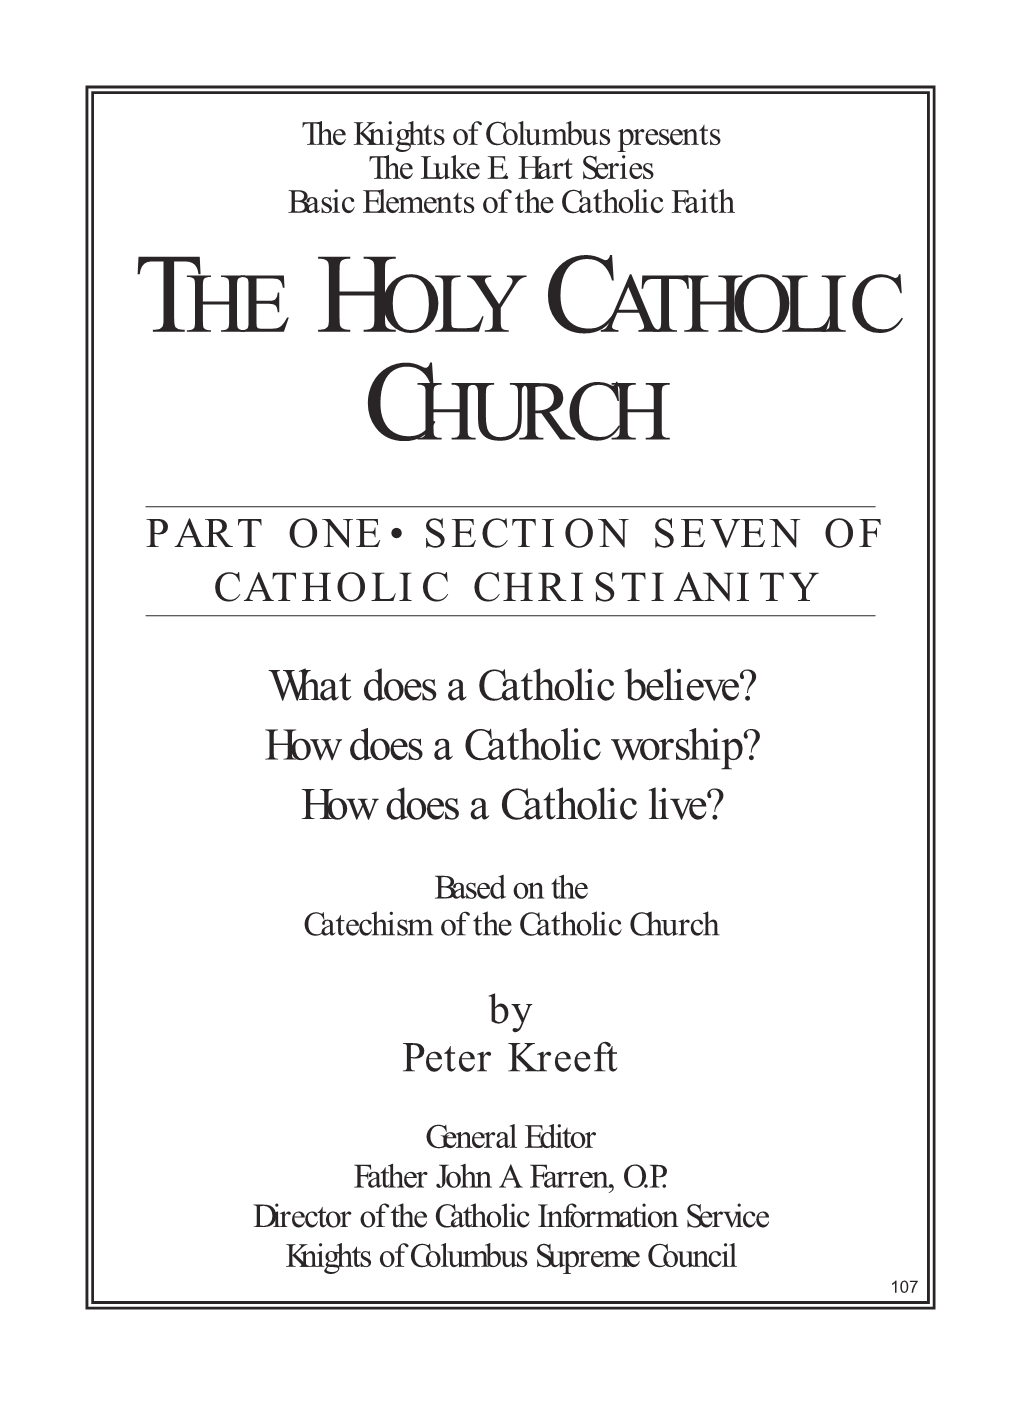 Luke E. Hart Series Basic Elements of the Catholic Faith the HOLY CATHOLIC CHURCH